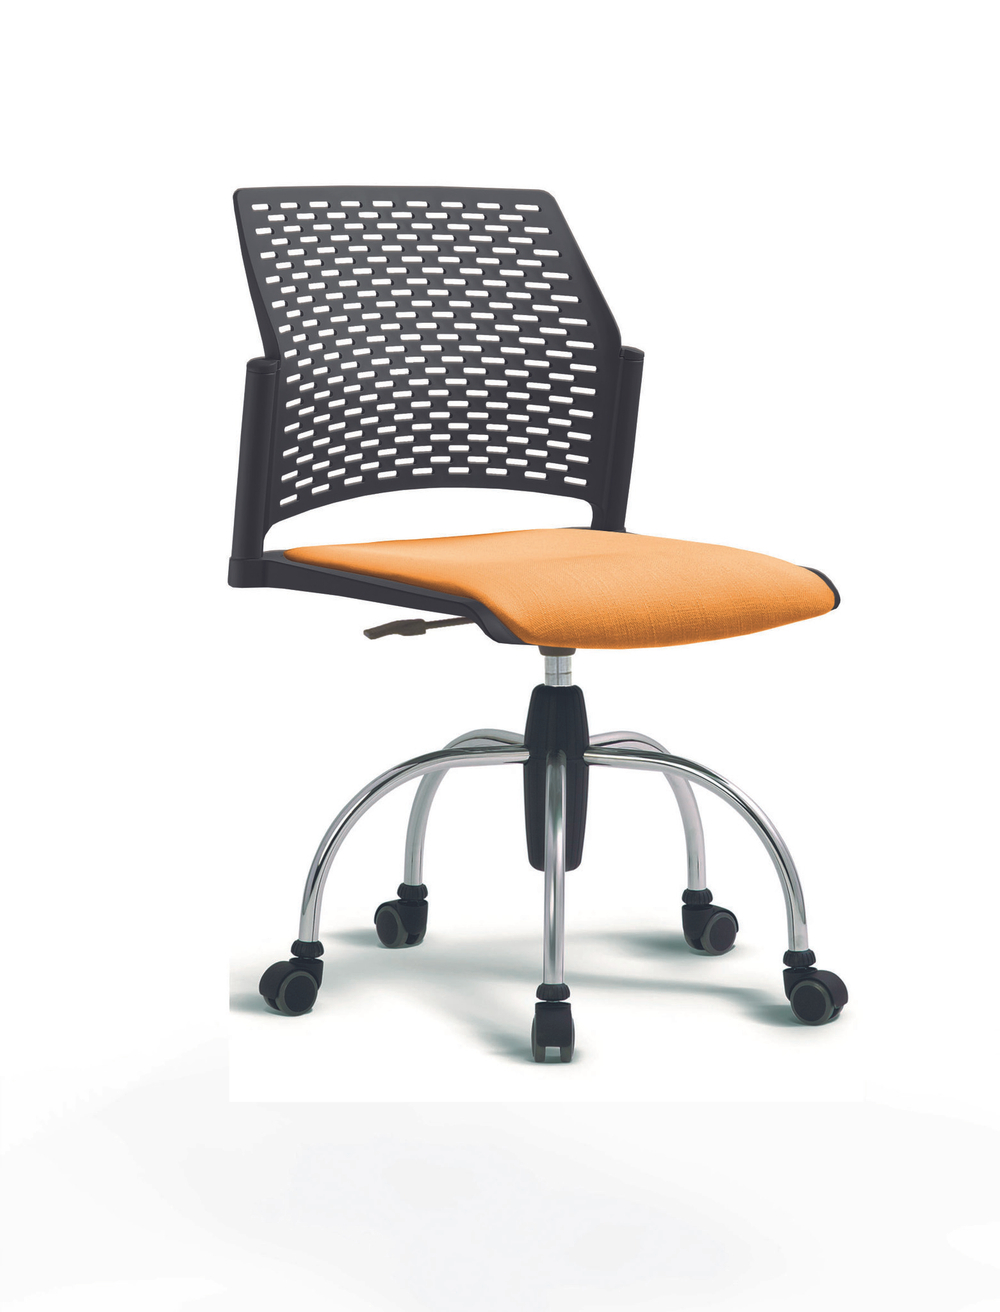 Кресло Rewind каркас хромированный, пластик черный, база паук хромированная, без подлокотников, сиденье оранжевое